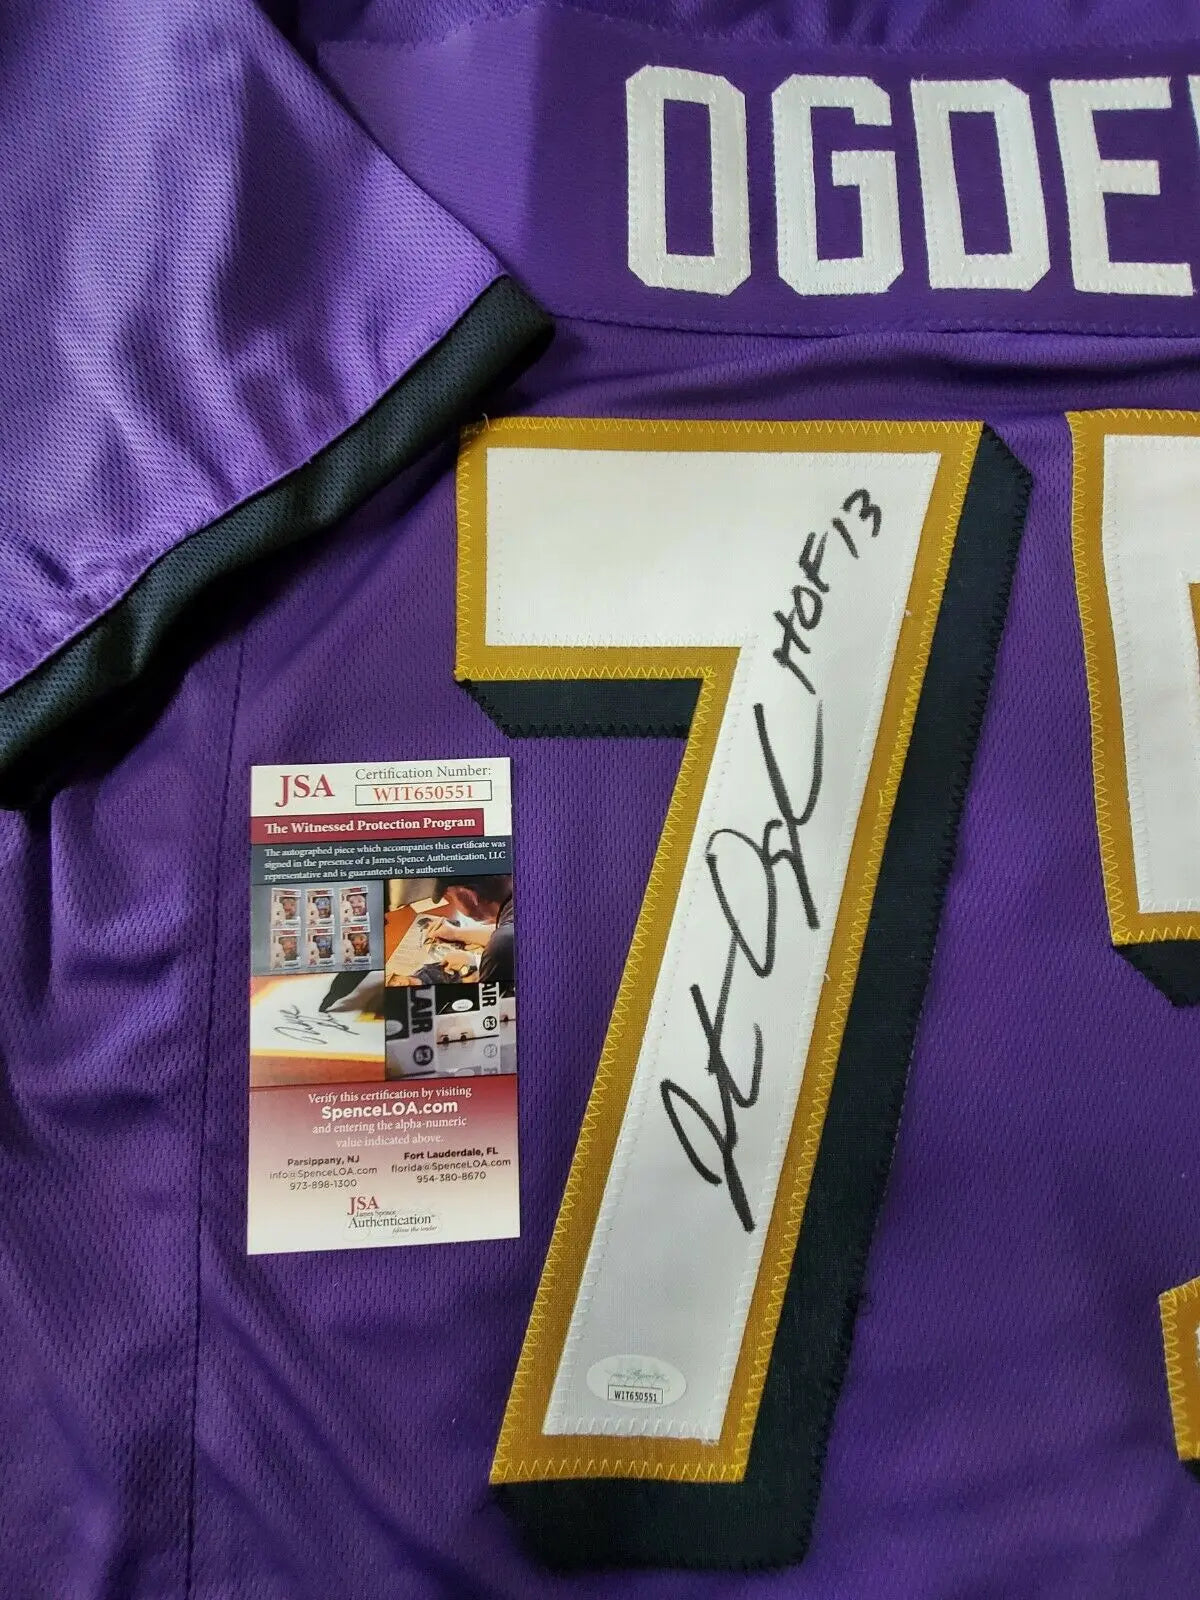 Jonathan Ogden Autographed/Signed Jersey JSA COA Baltimore Ravens